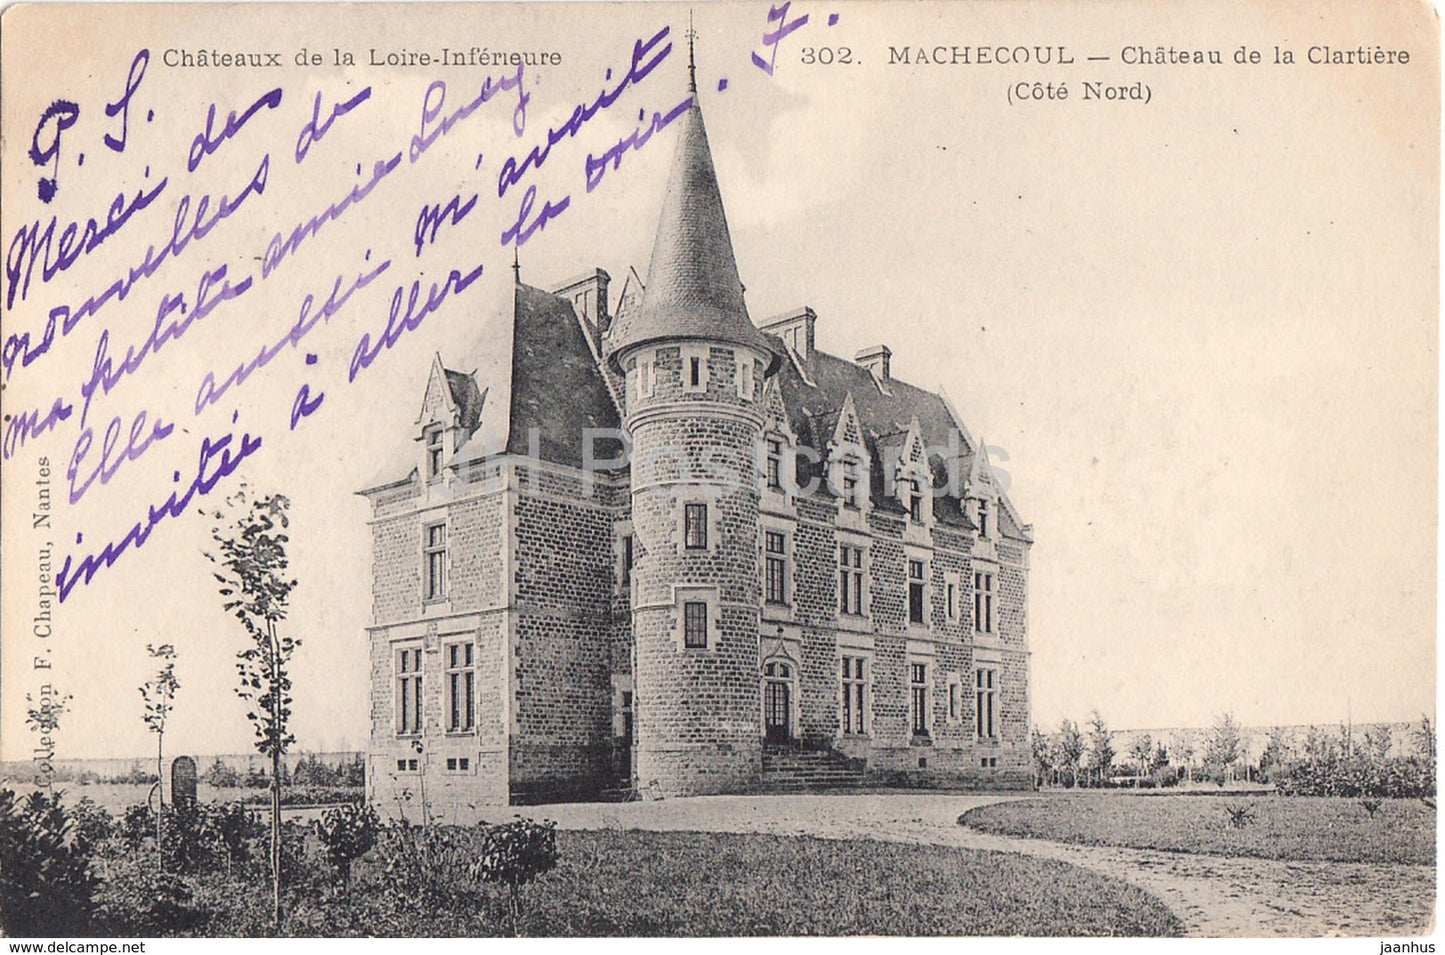 Machecoul - Chateau de la Clartiere - Cote Nord - 302 - castle - old postcard - 1907 - France - used